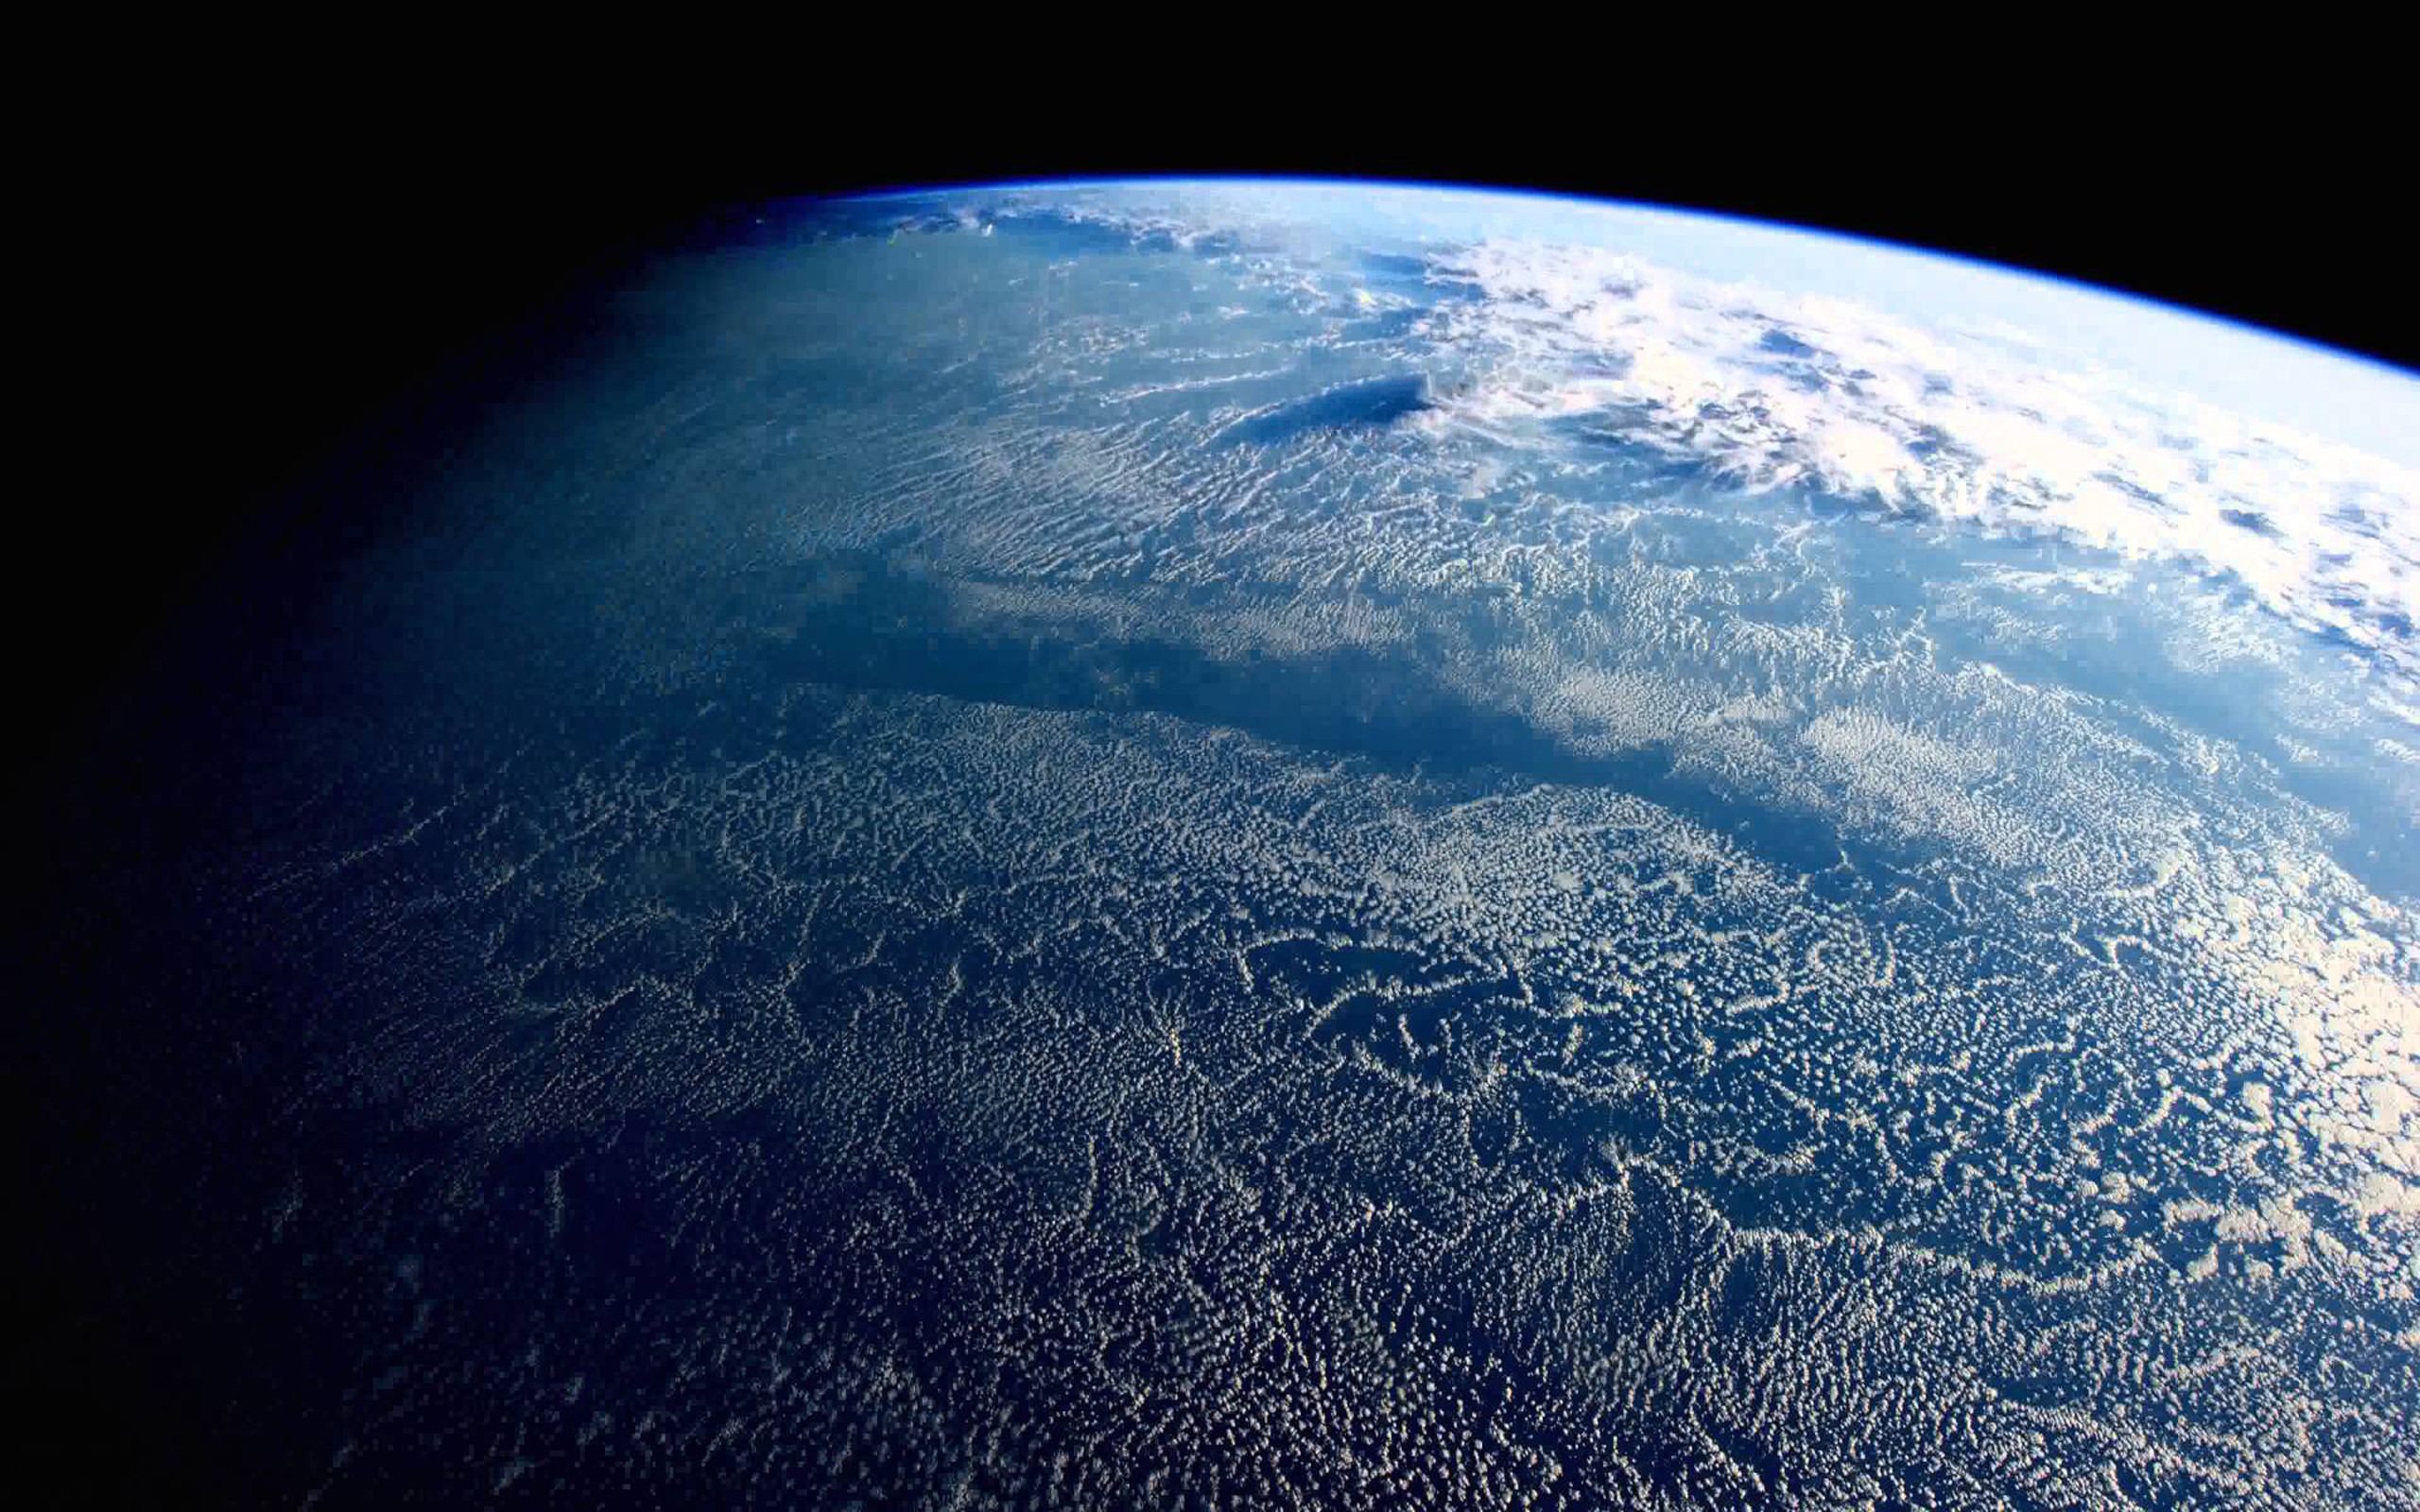 Обои реальном времени. Снимки земли из космоса. Планета из космоса. Планета земля вид из космоса. О земле и космосе.